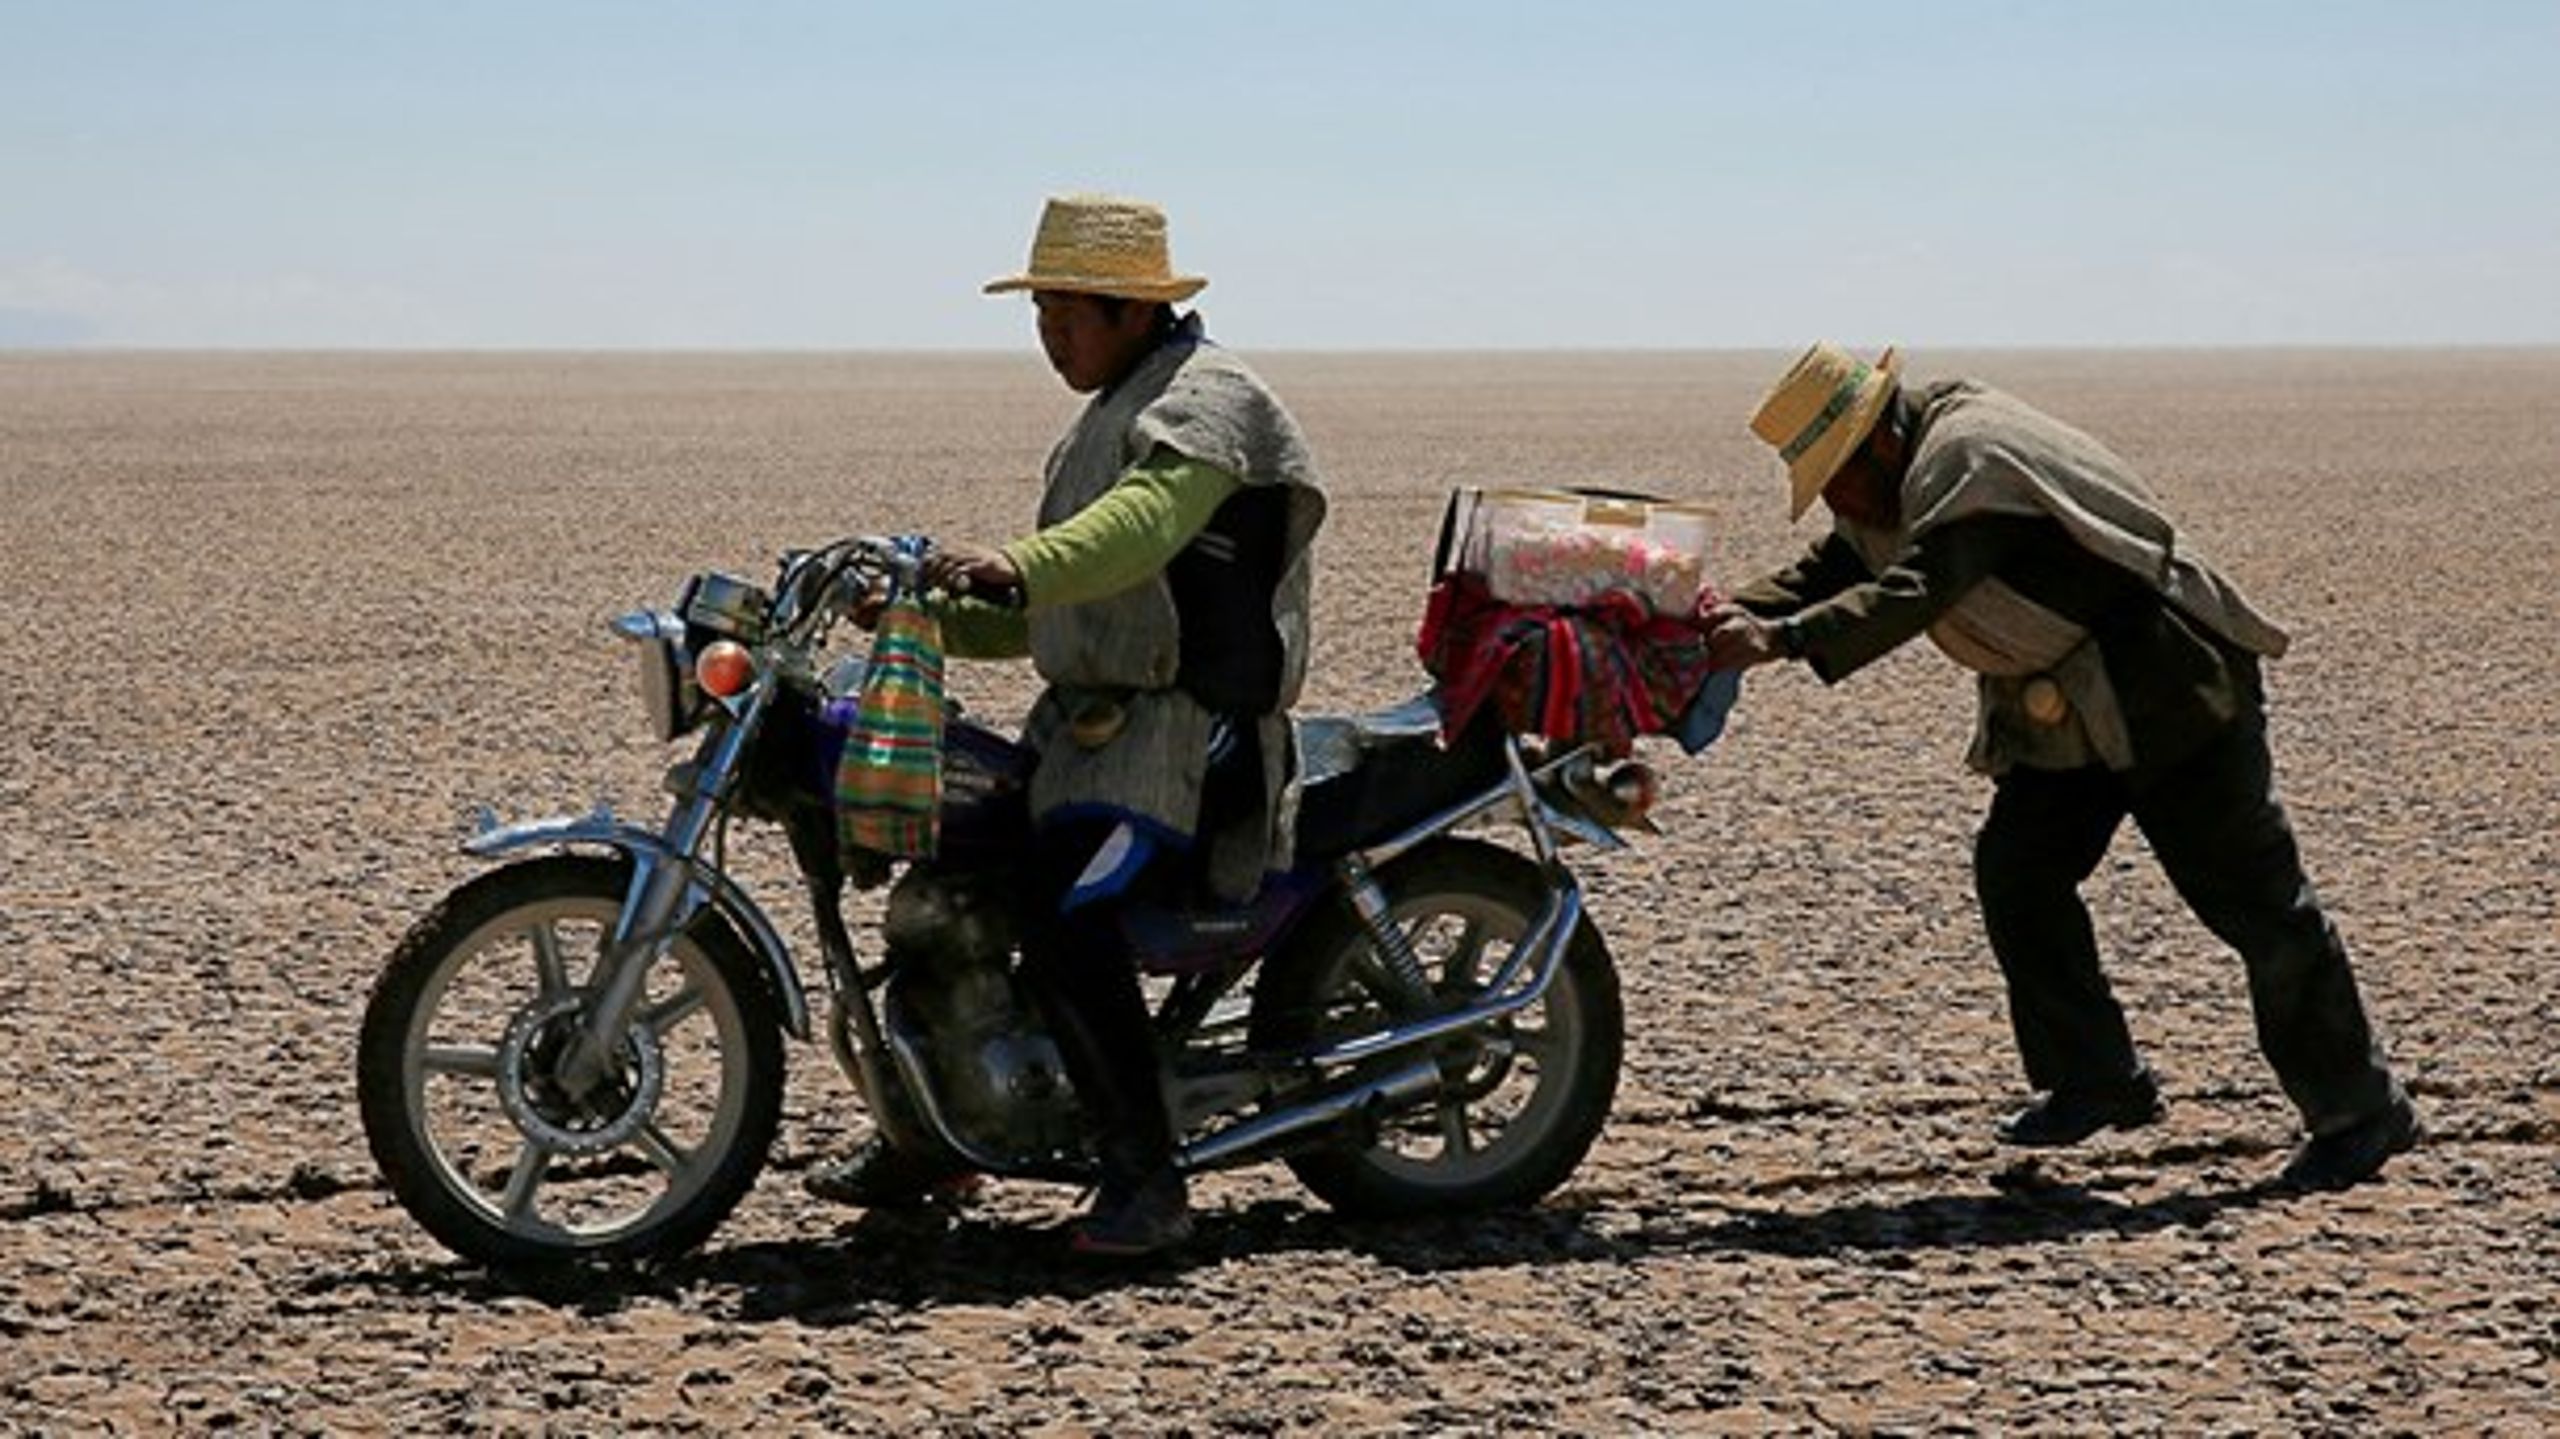 En fuldstændig udtørret sø i det sydvestlige Bolivia, der ligesom så mange andre lande søger støtte fra de udviklede lande til at håndtere klimaforandringerne. Grundige klimaplaner kan sparke gang i den grønne teknologivækst i udviklingslande, fremhæver seniorforsker på DTU.